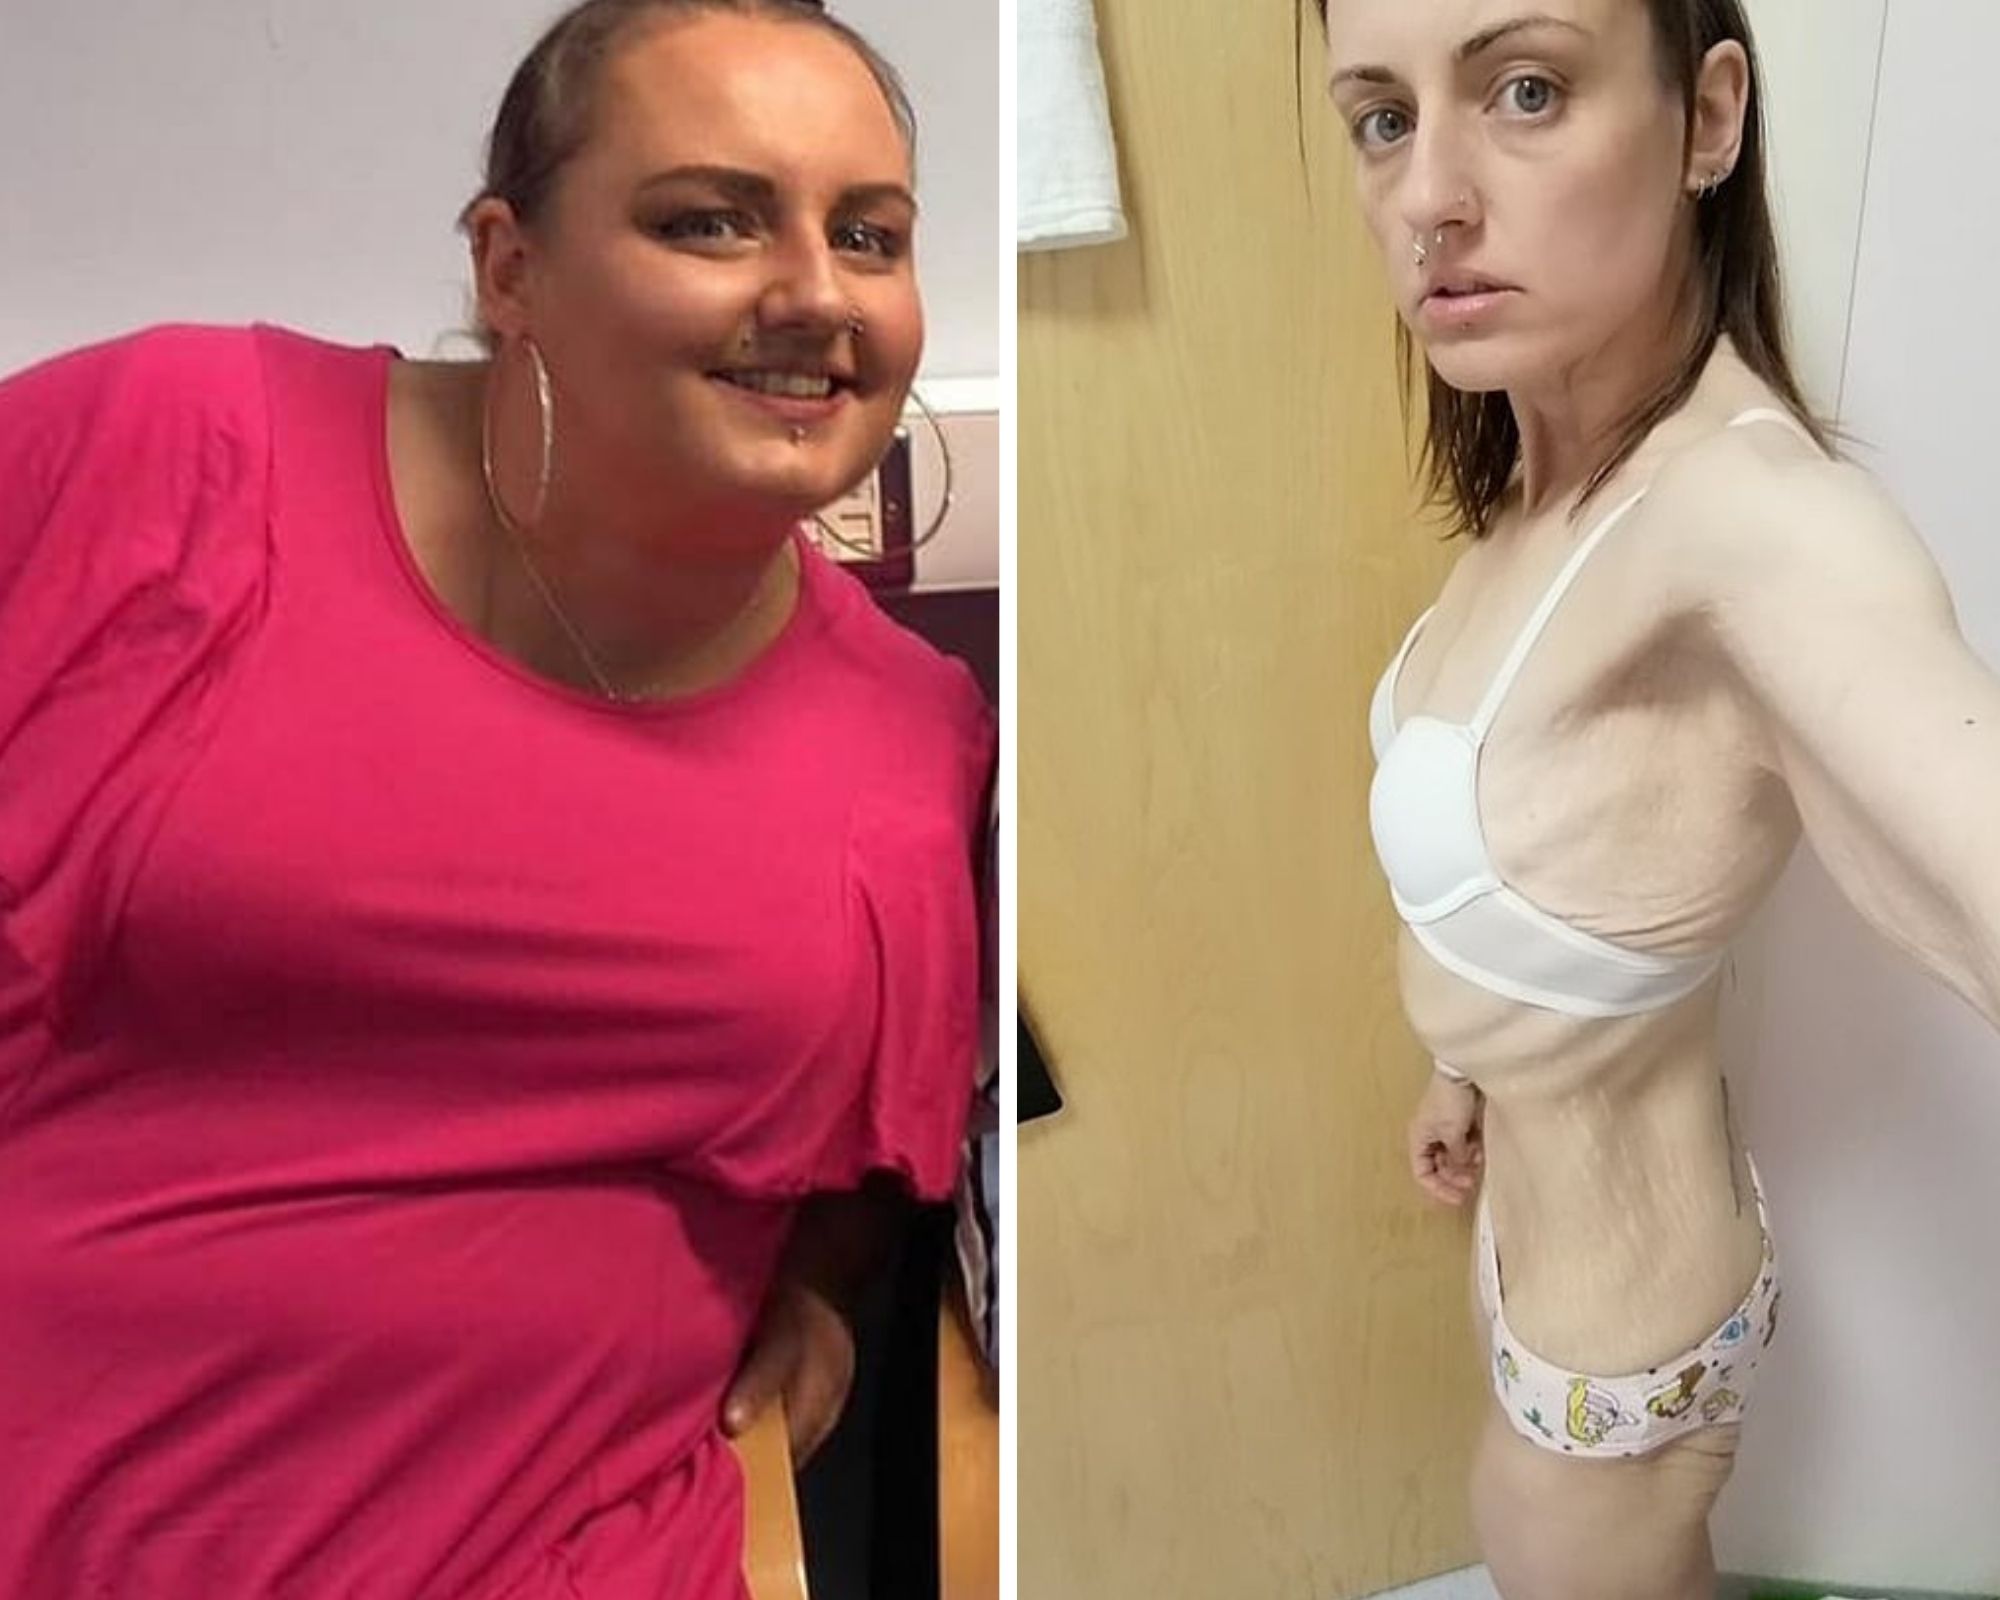 Натали до и после похудения. Фото © Caters News Agency